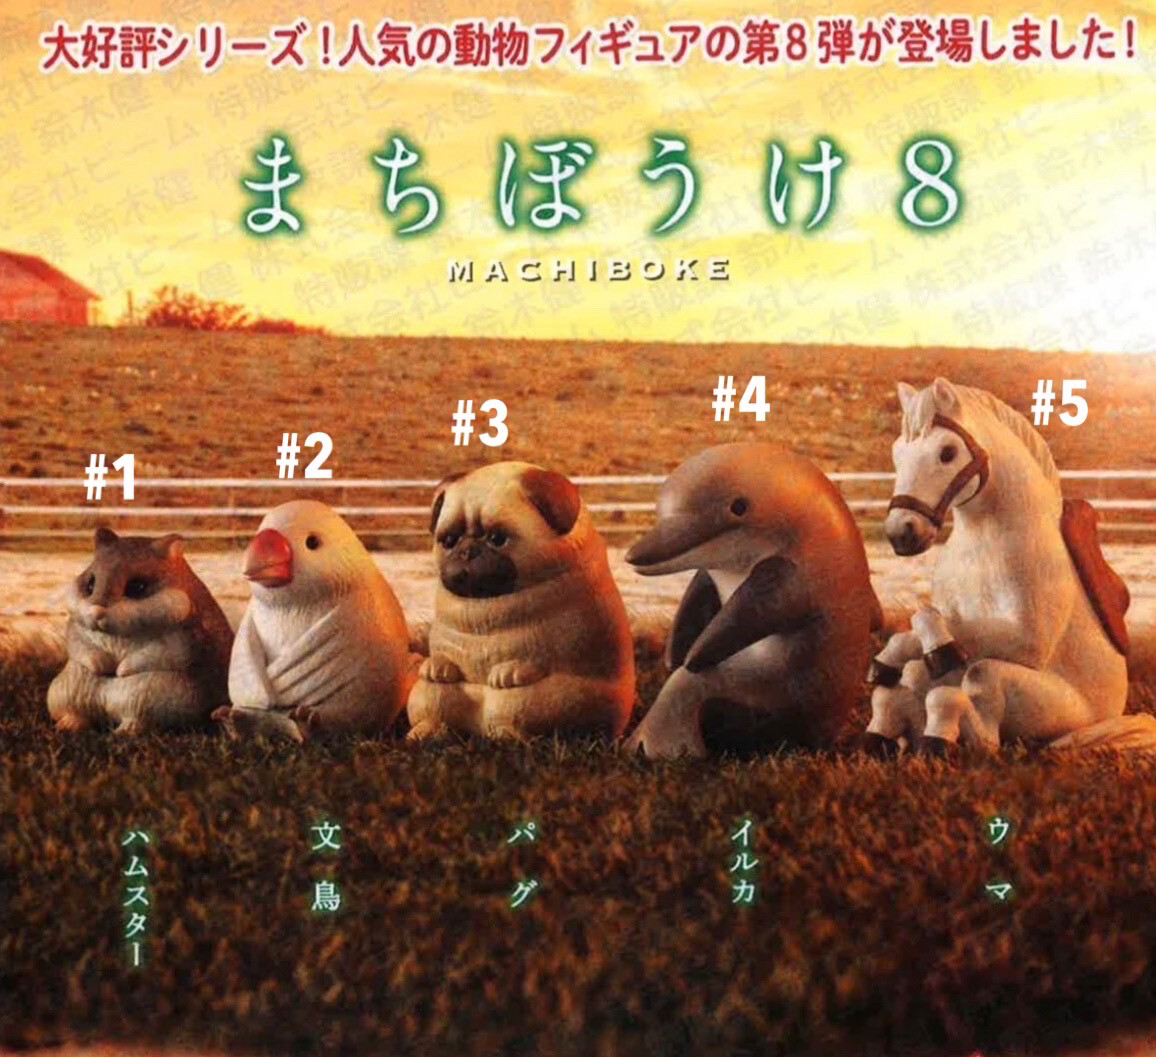 Bandai Machiboke Animal Waiting Part 7 Gashapon